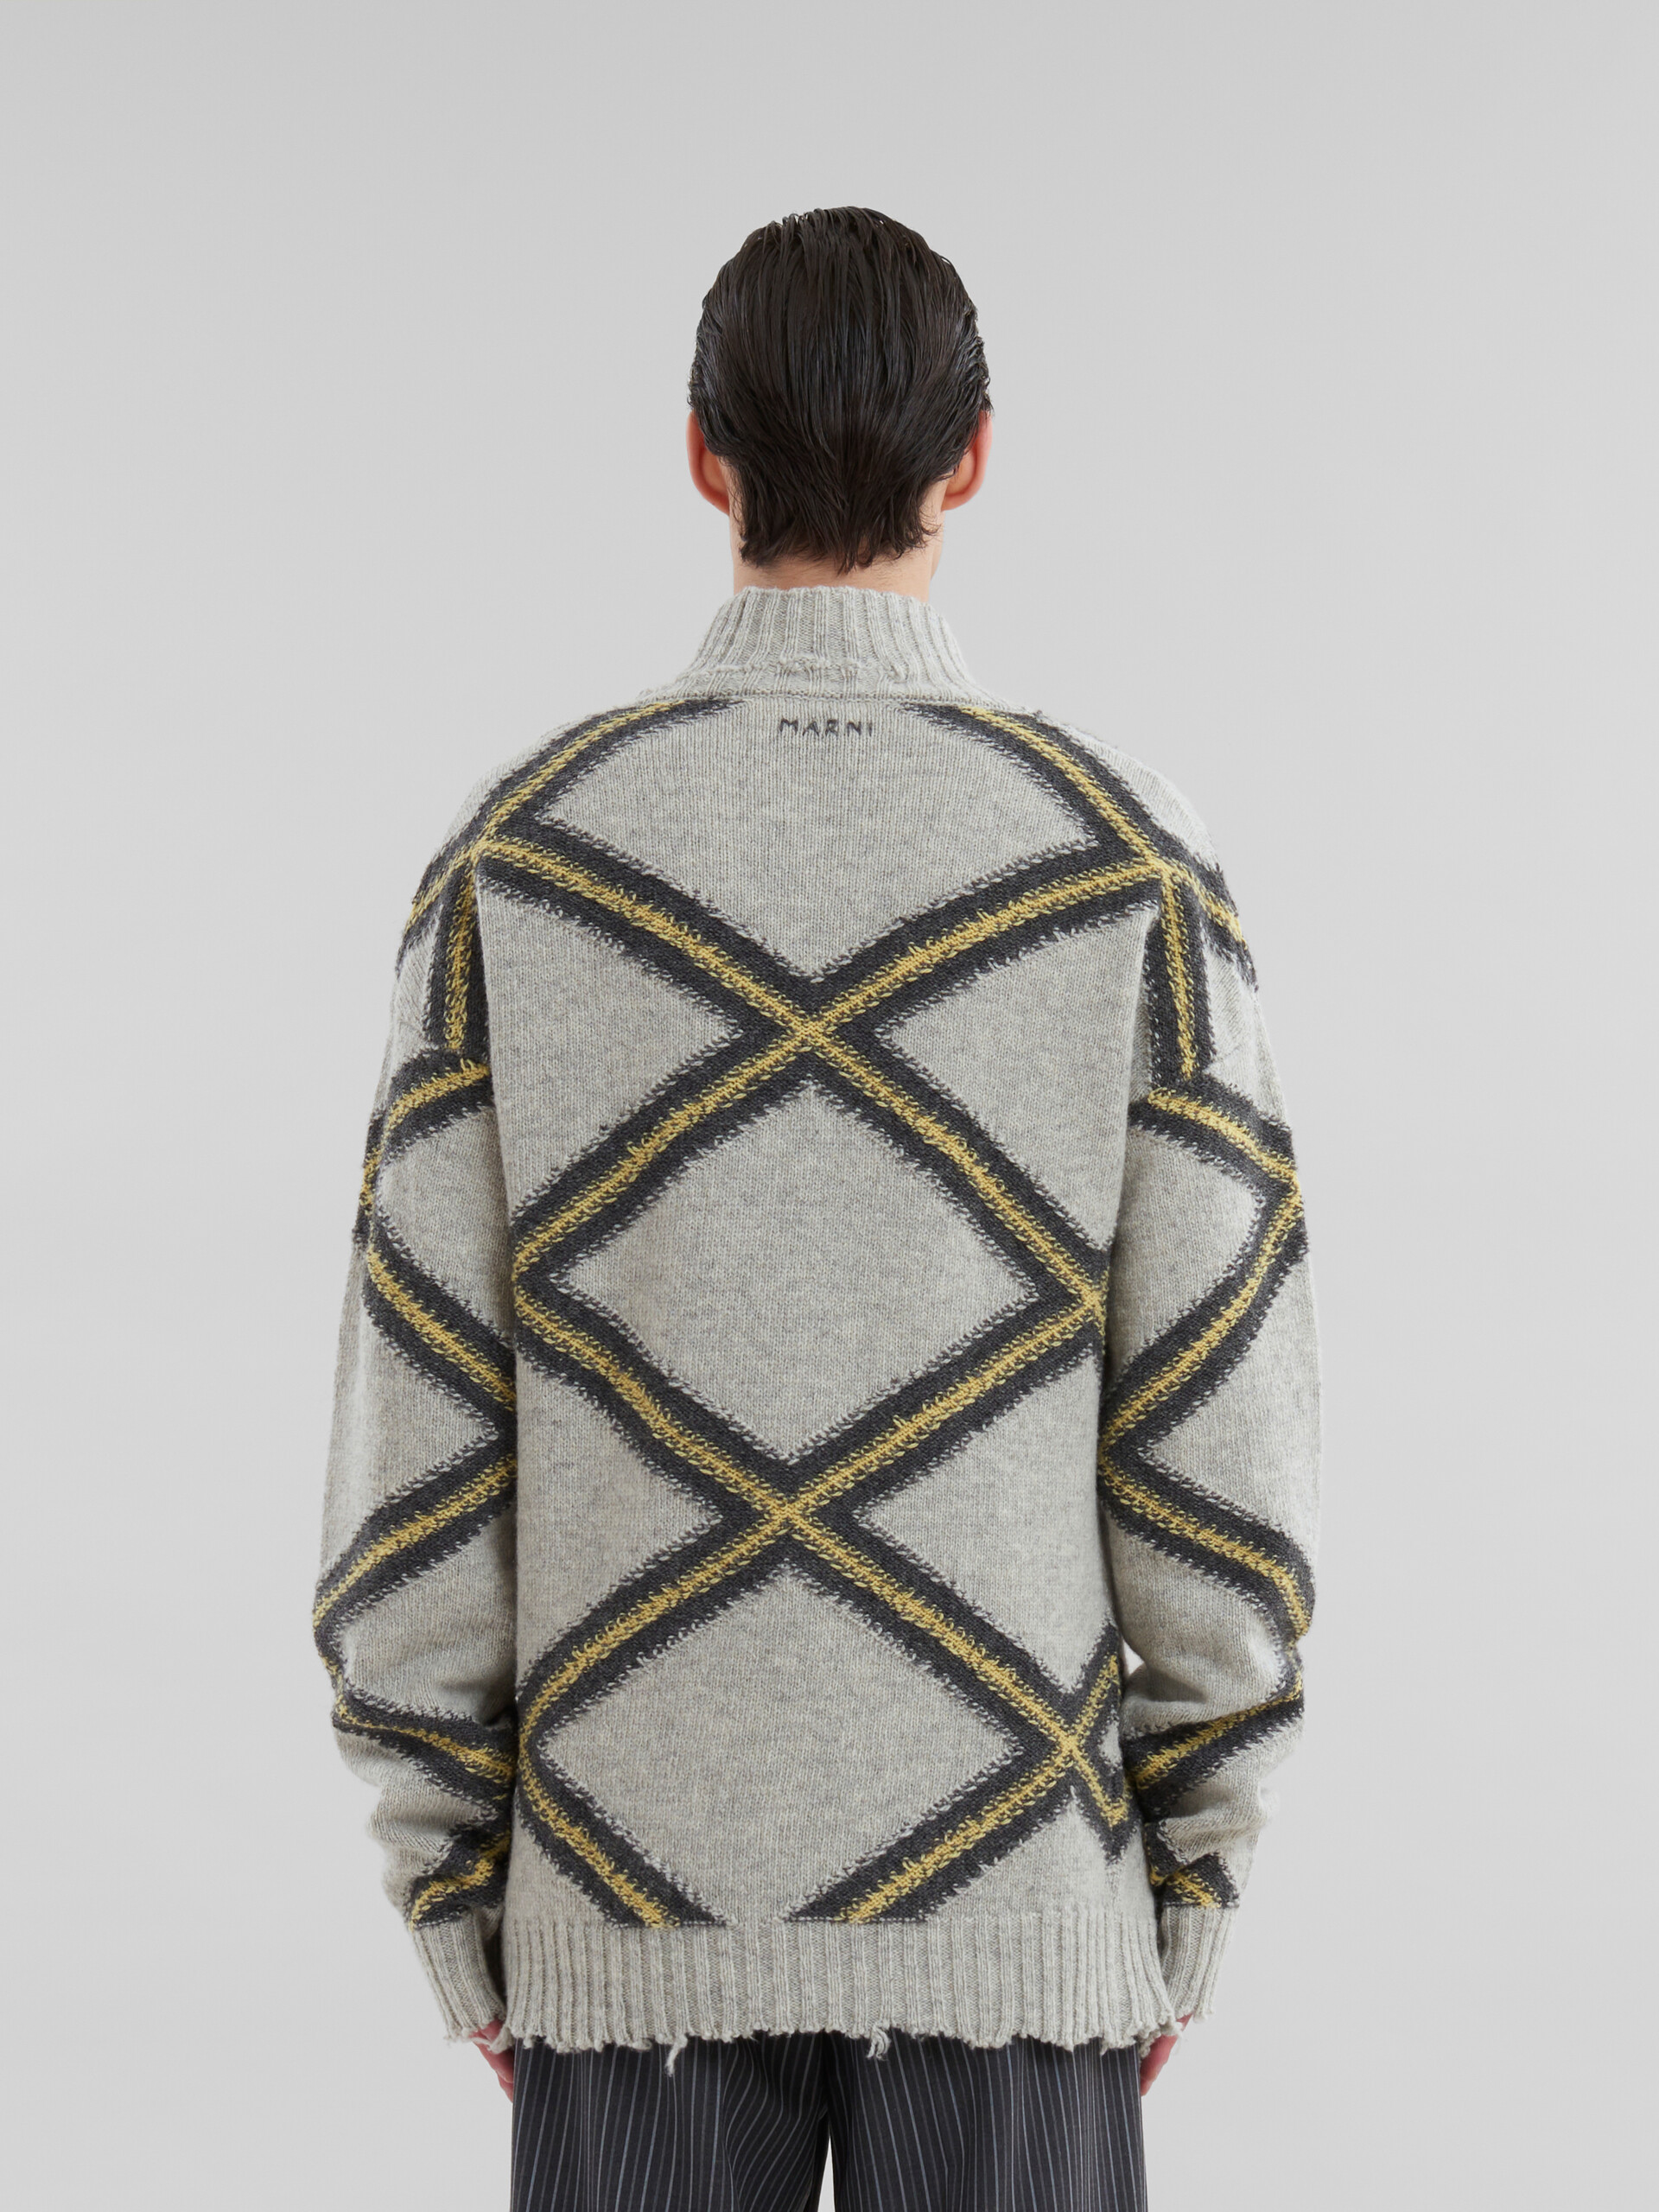 Jersey gris de lana quebrada con motivo de rombos - jerseys - Image 3